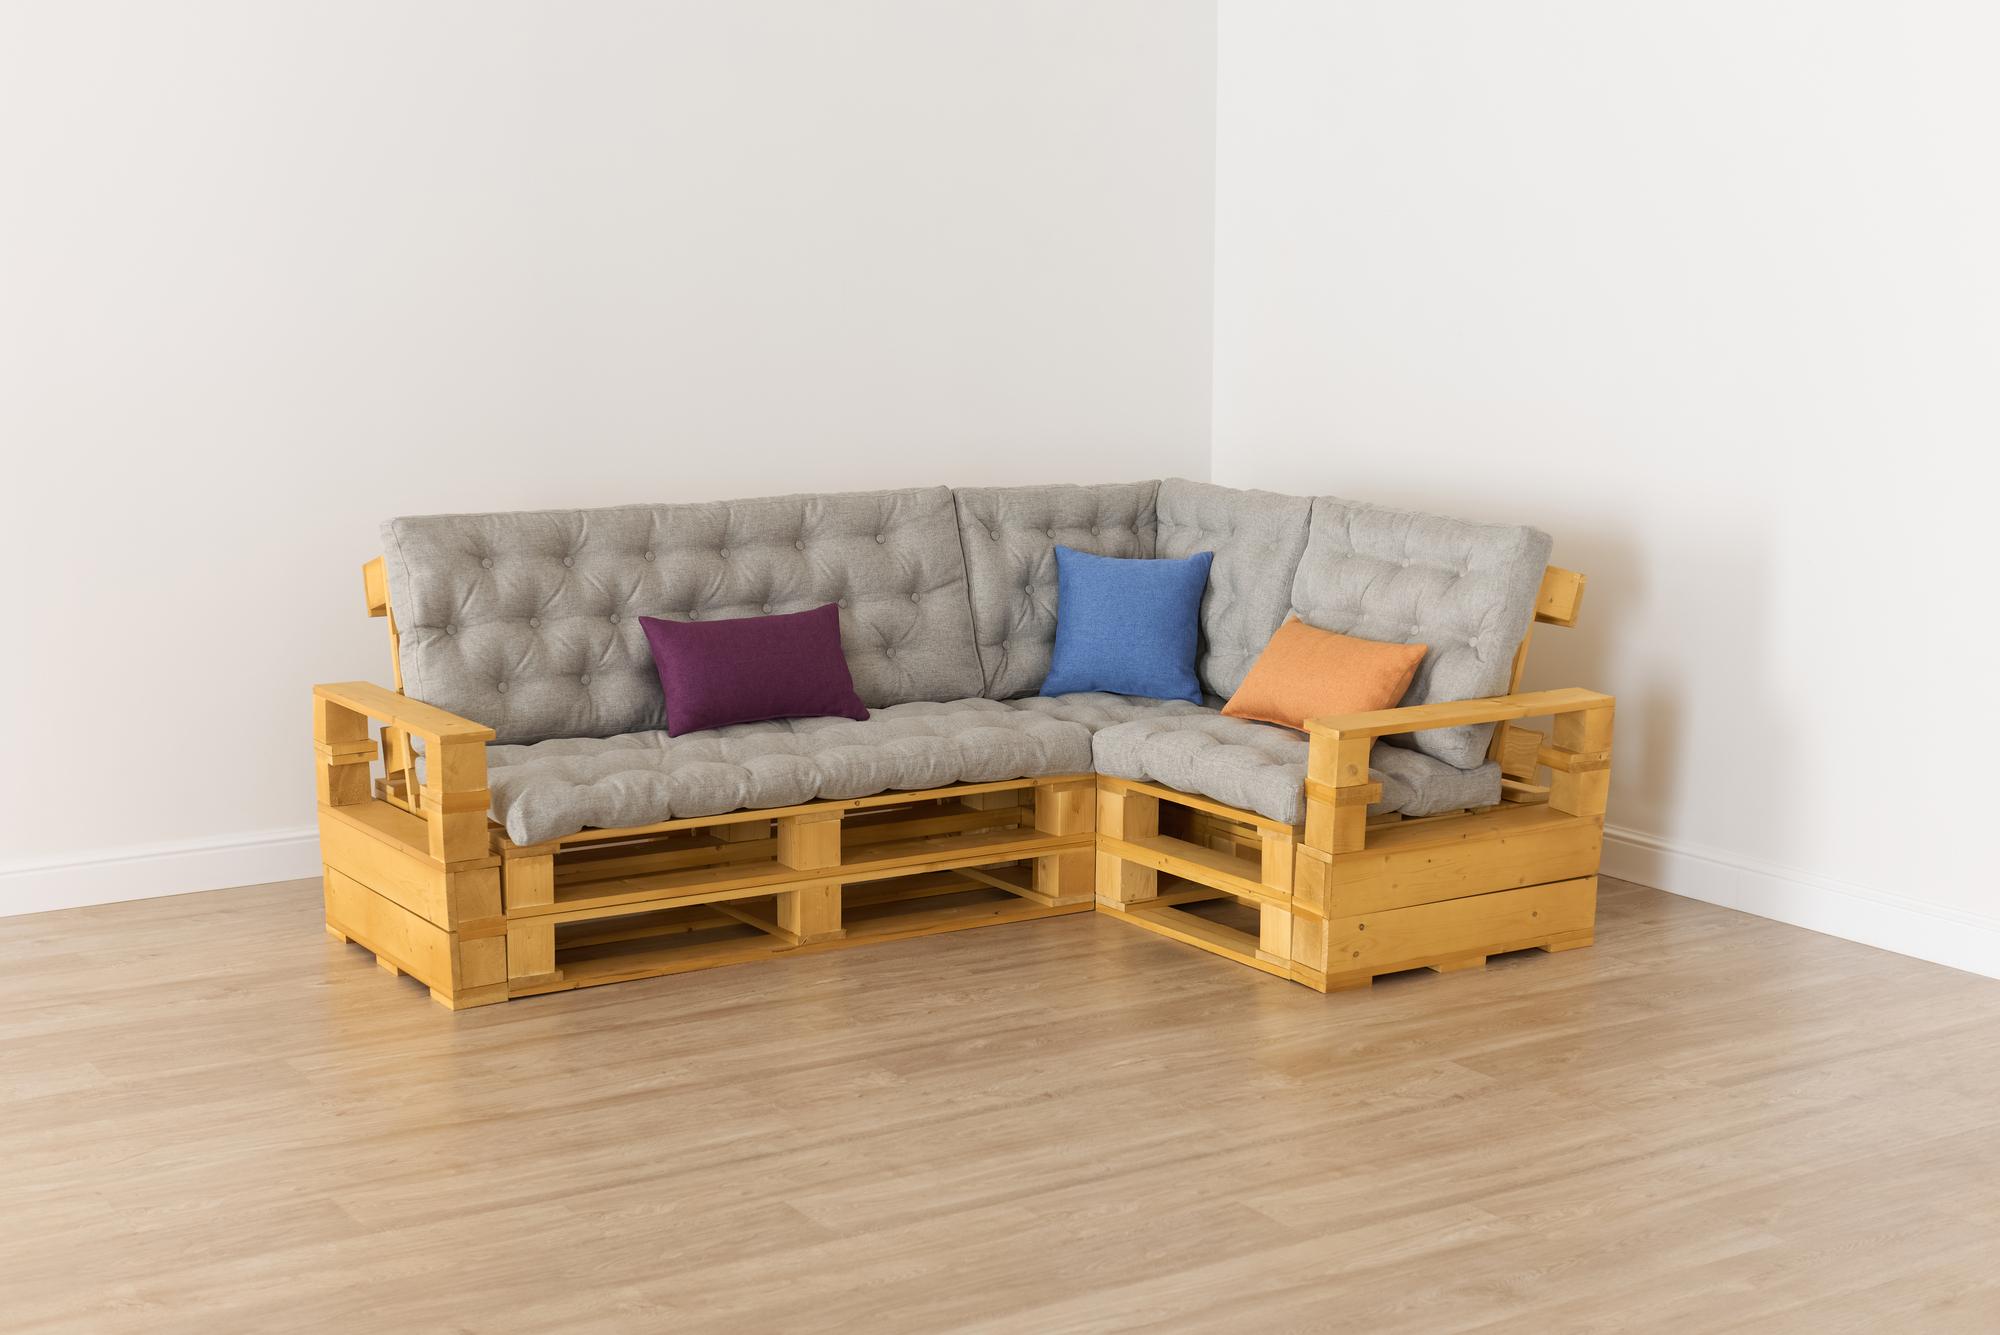 Купить Подлокотник + Диван 70 + угловой диван + диван 140 + подлокотник от производителя “Архитектория” 